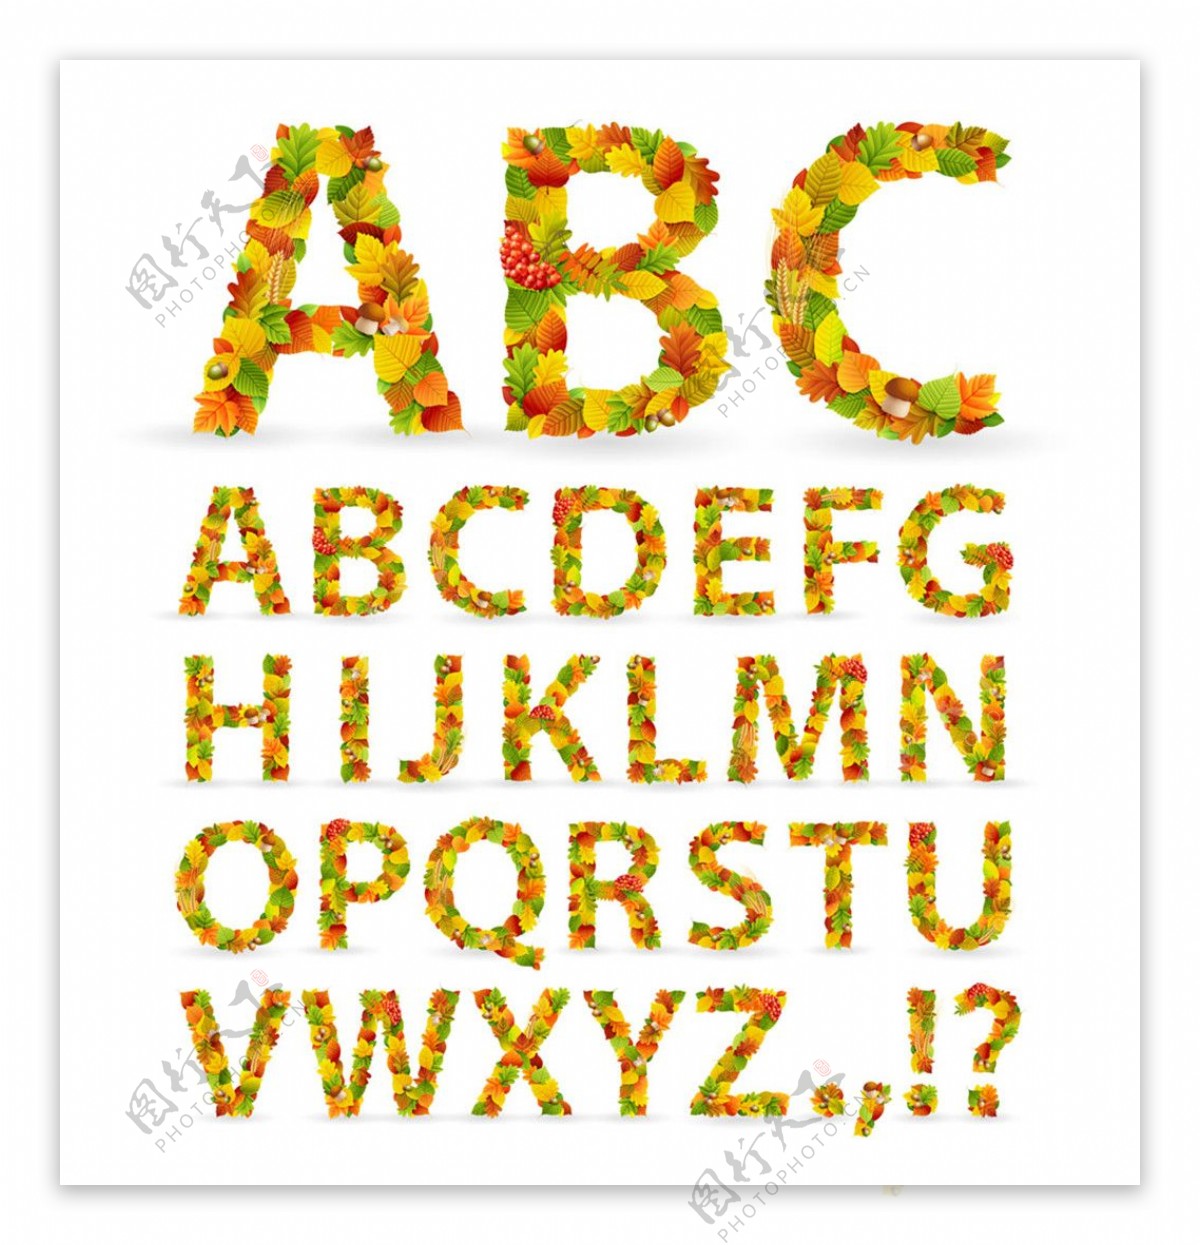 彩色树叶字体英文图片